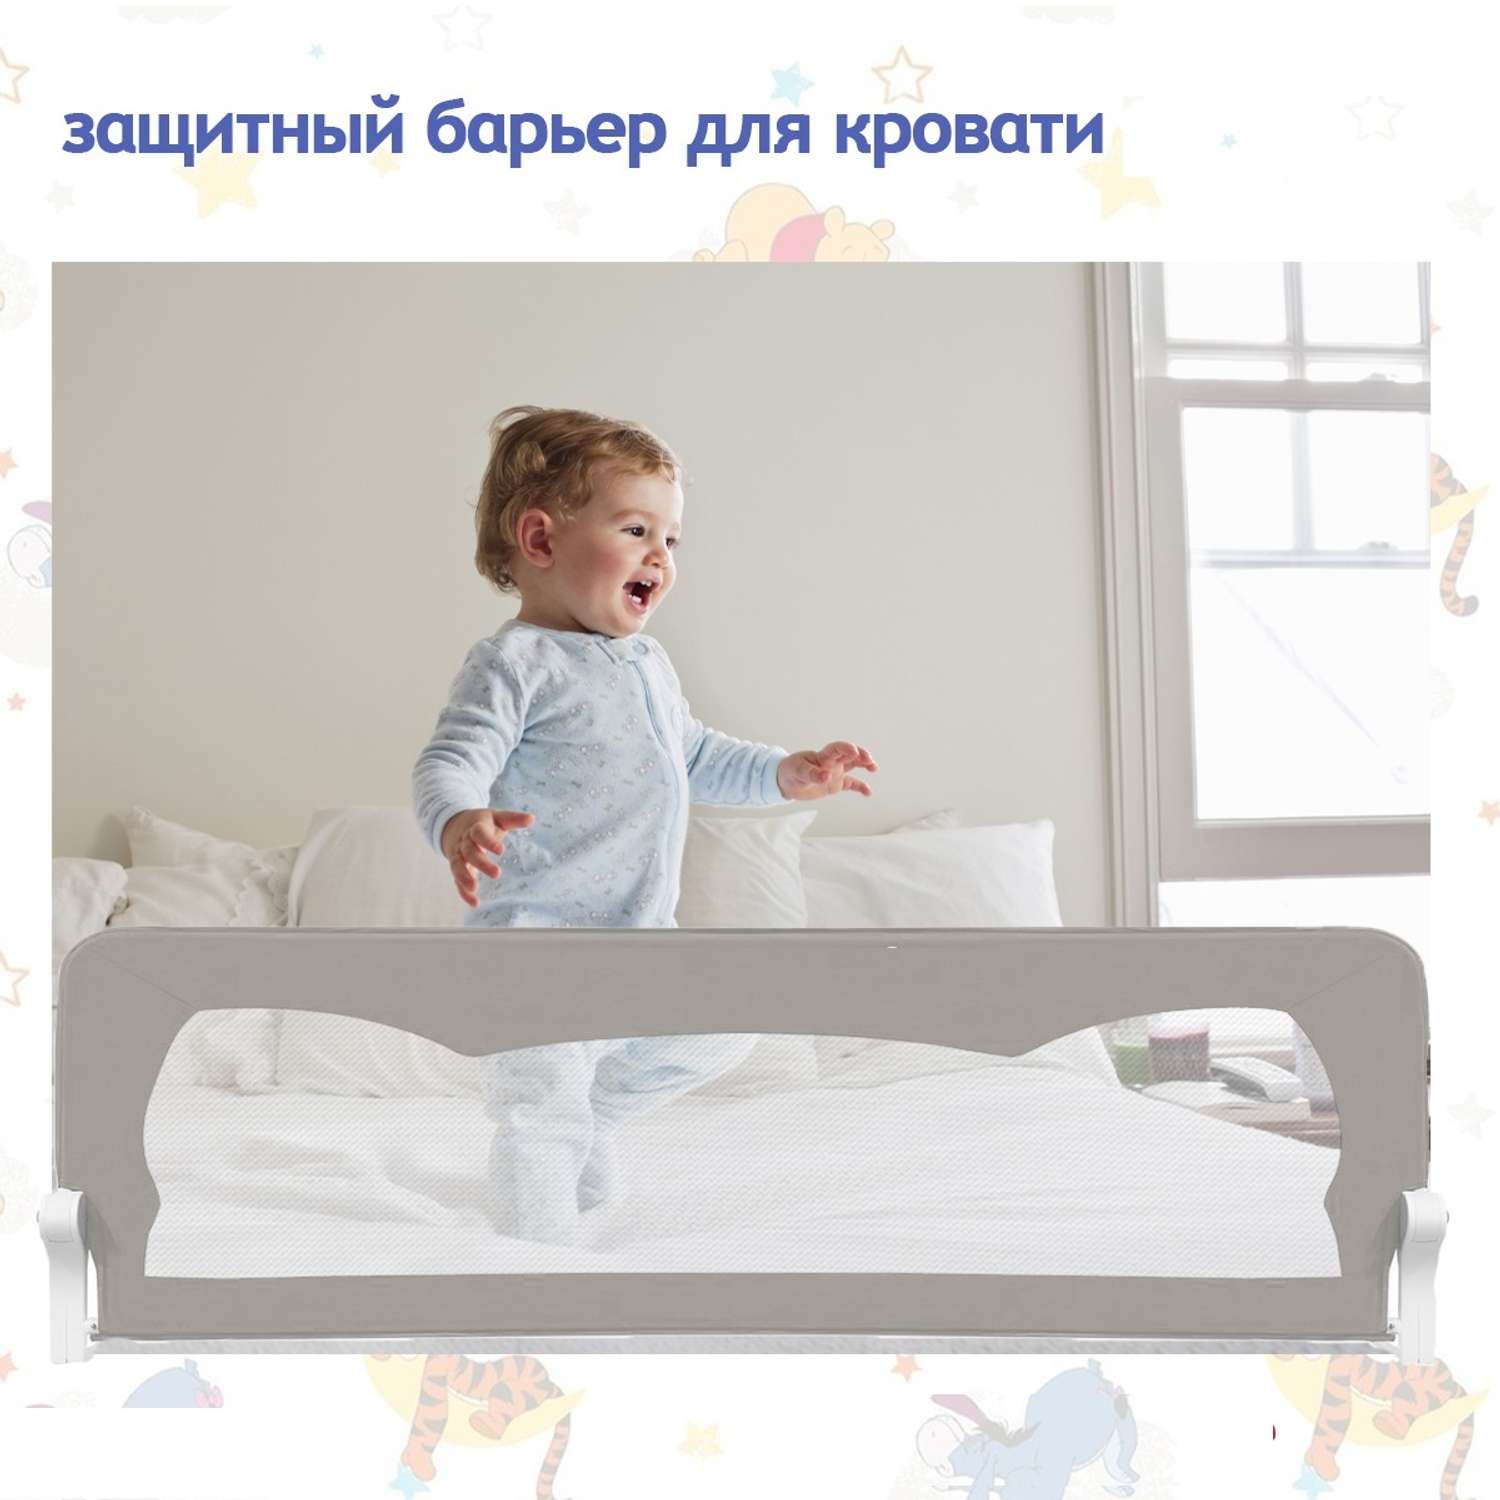 Ограничители бортики для детской кровати от падений купить недорого